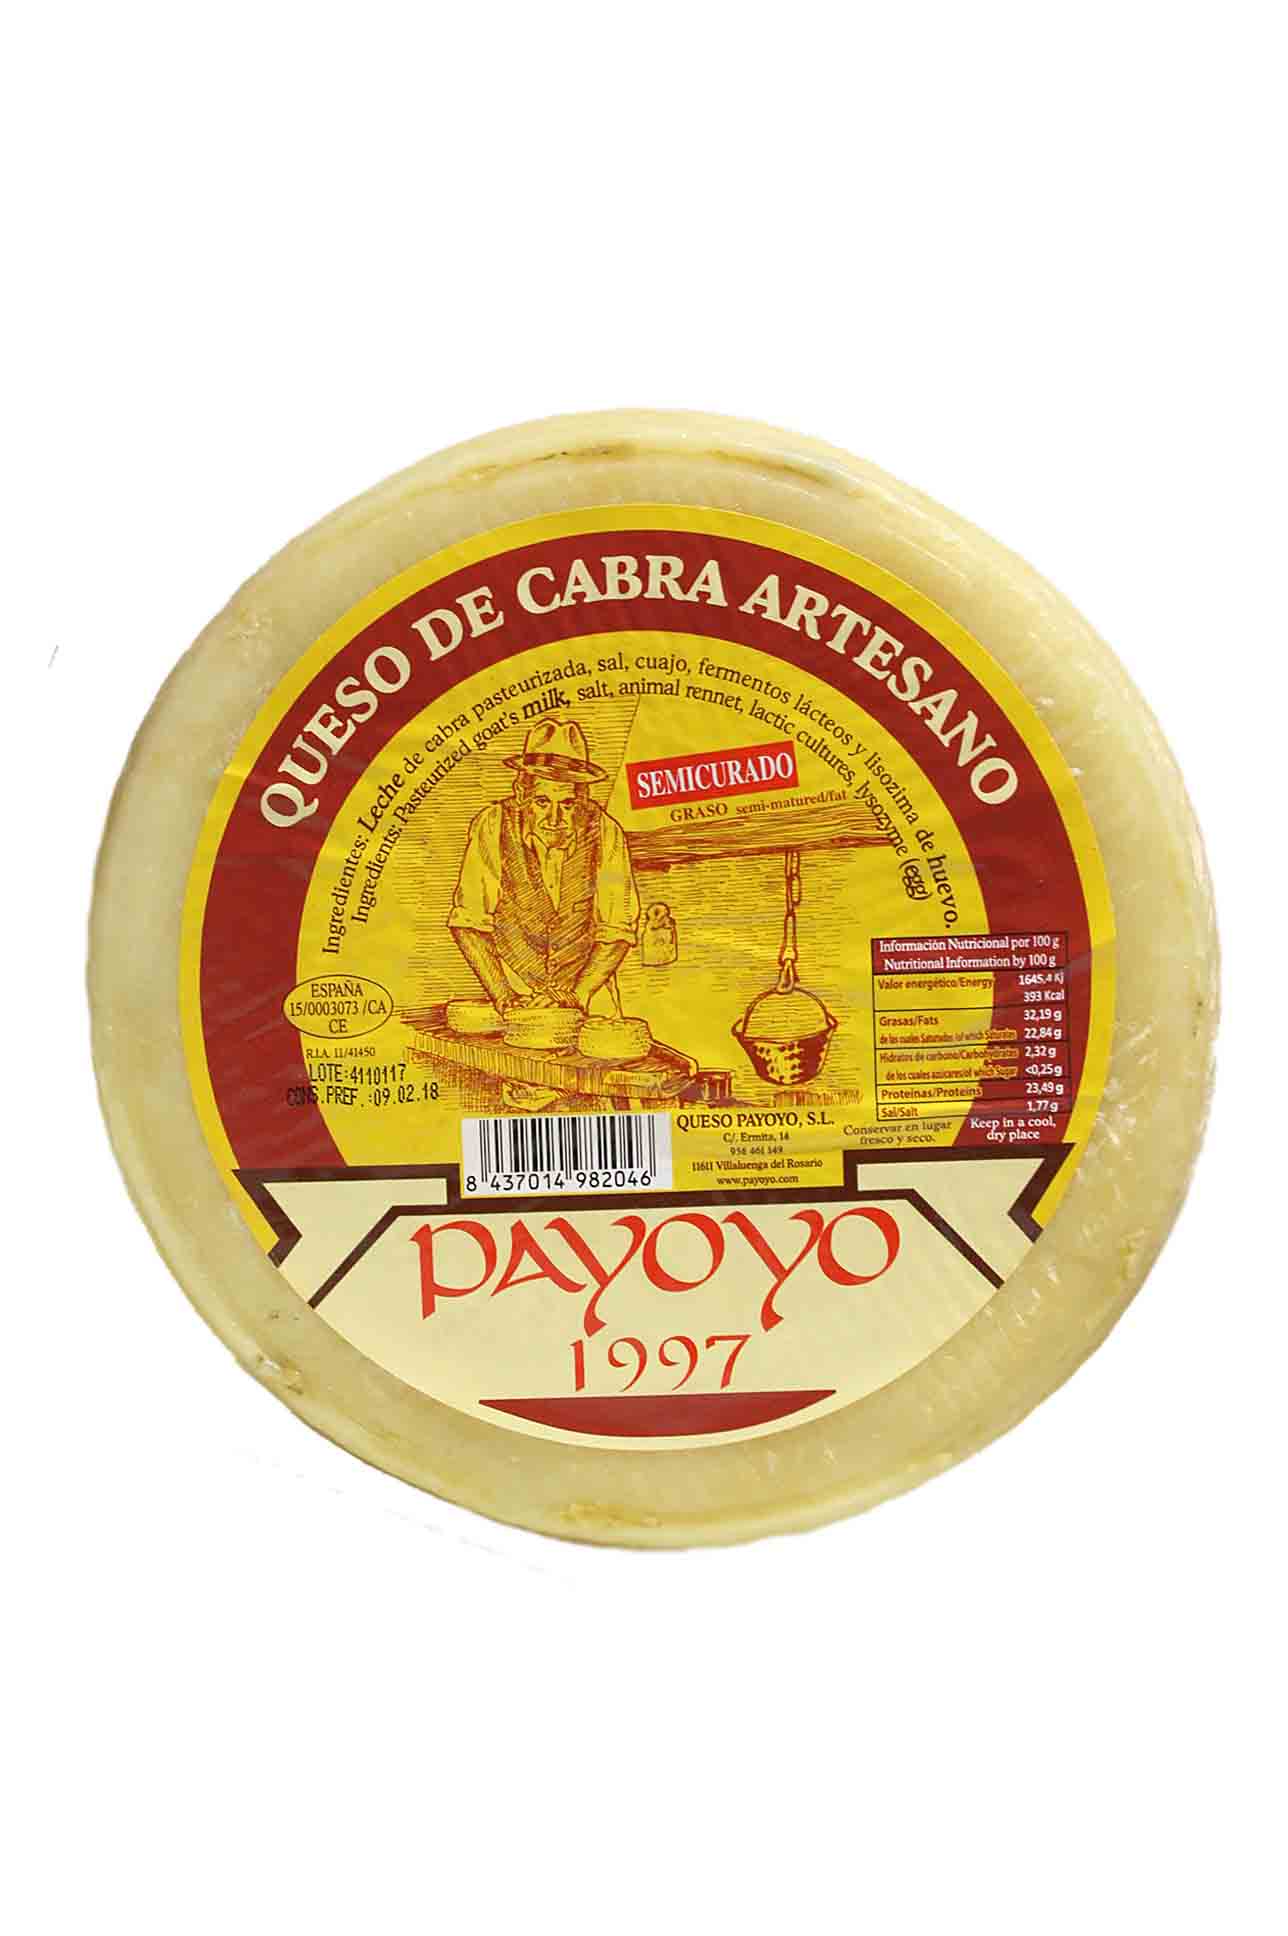 Payoyo Q31-Payoyo cheese